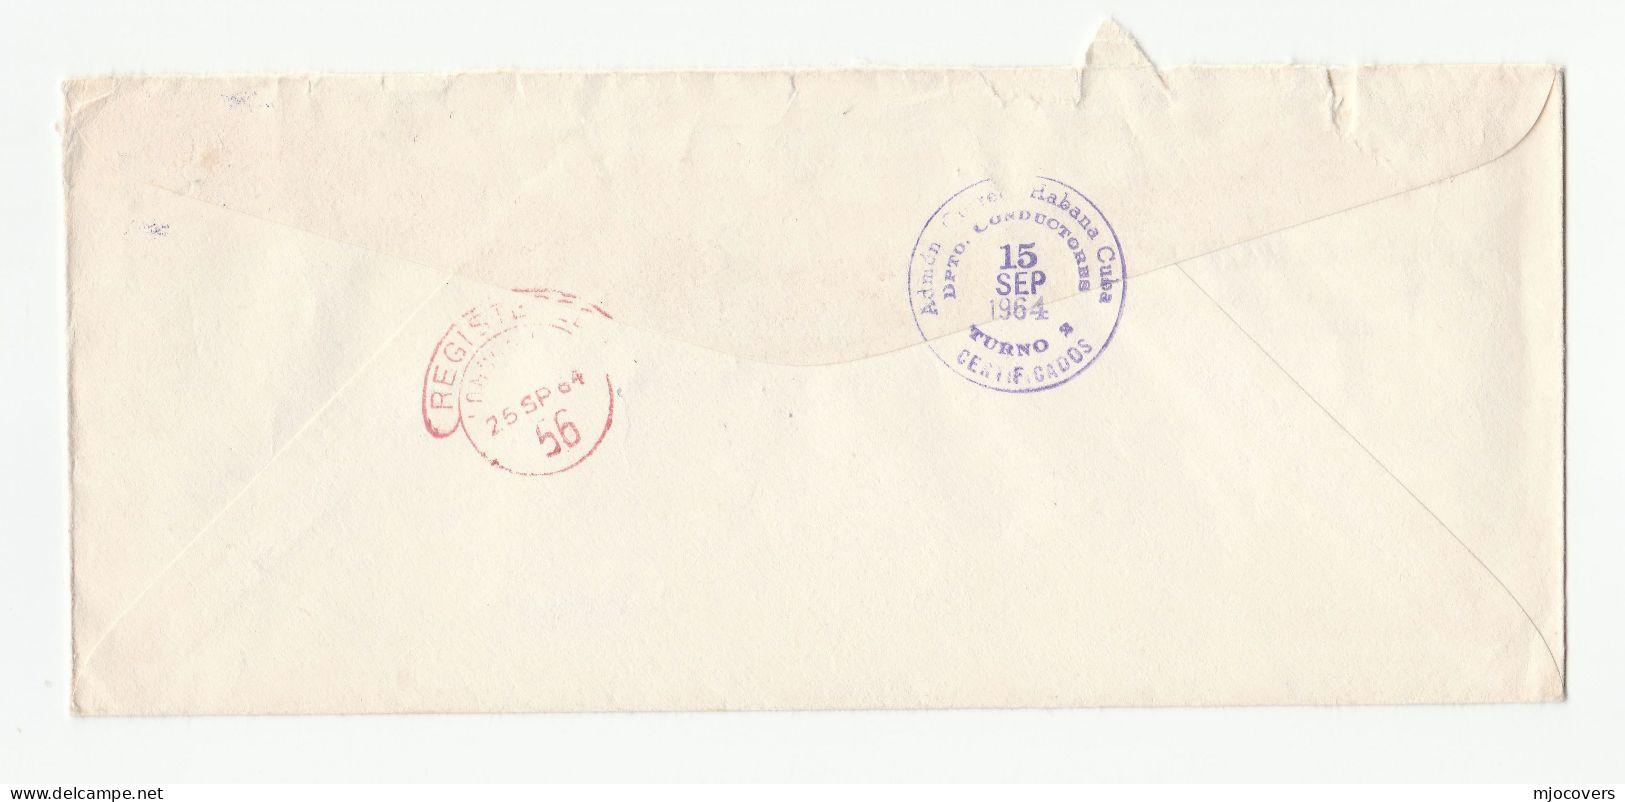 AVIATION RADIO - 1964 Cubana De Aviacion CUBA To International AERADIO Ltd GB Cover Stamps Telecom - Airmail